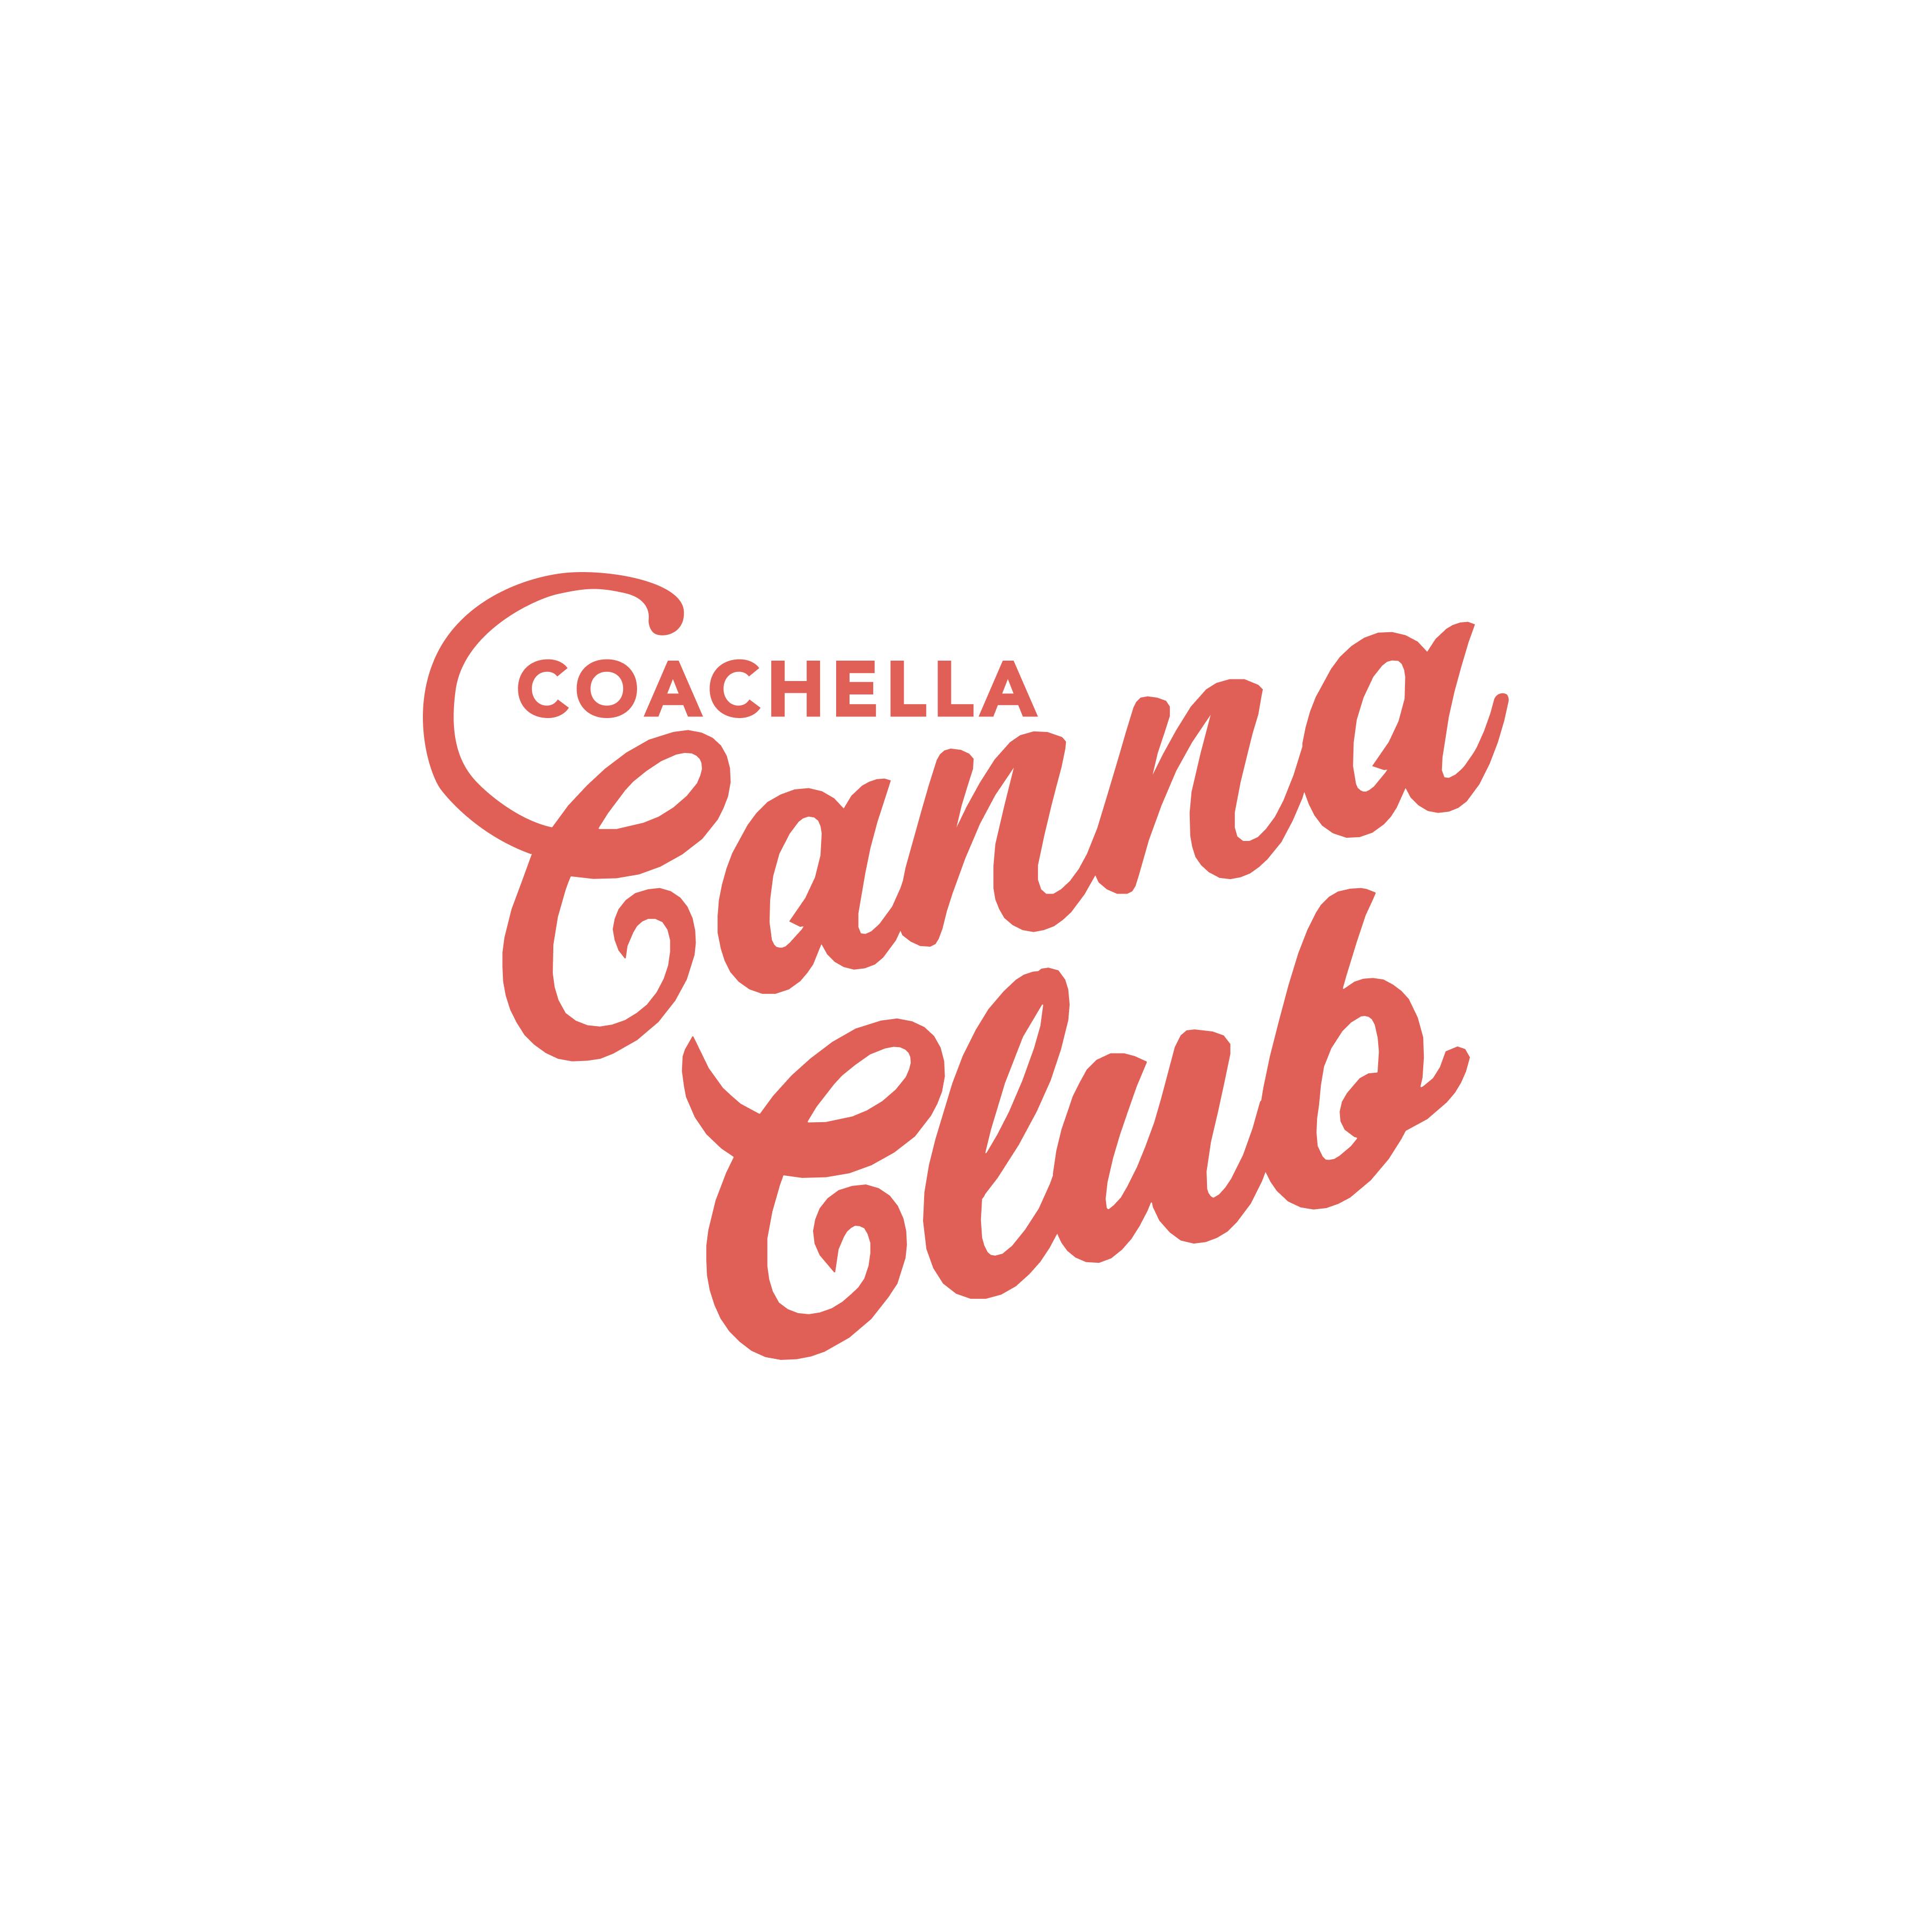 Coachella Canna Club logo